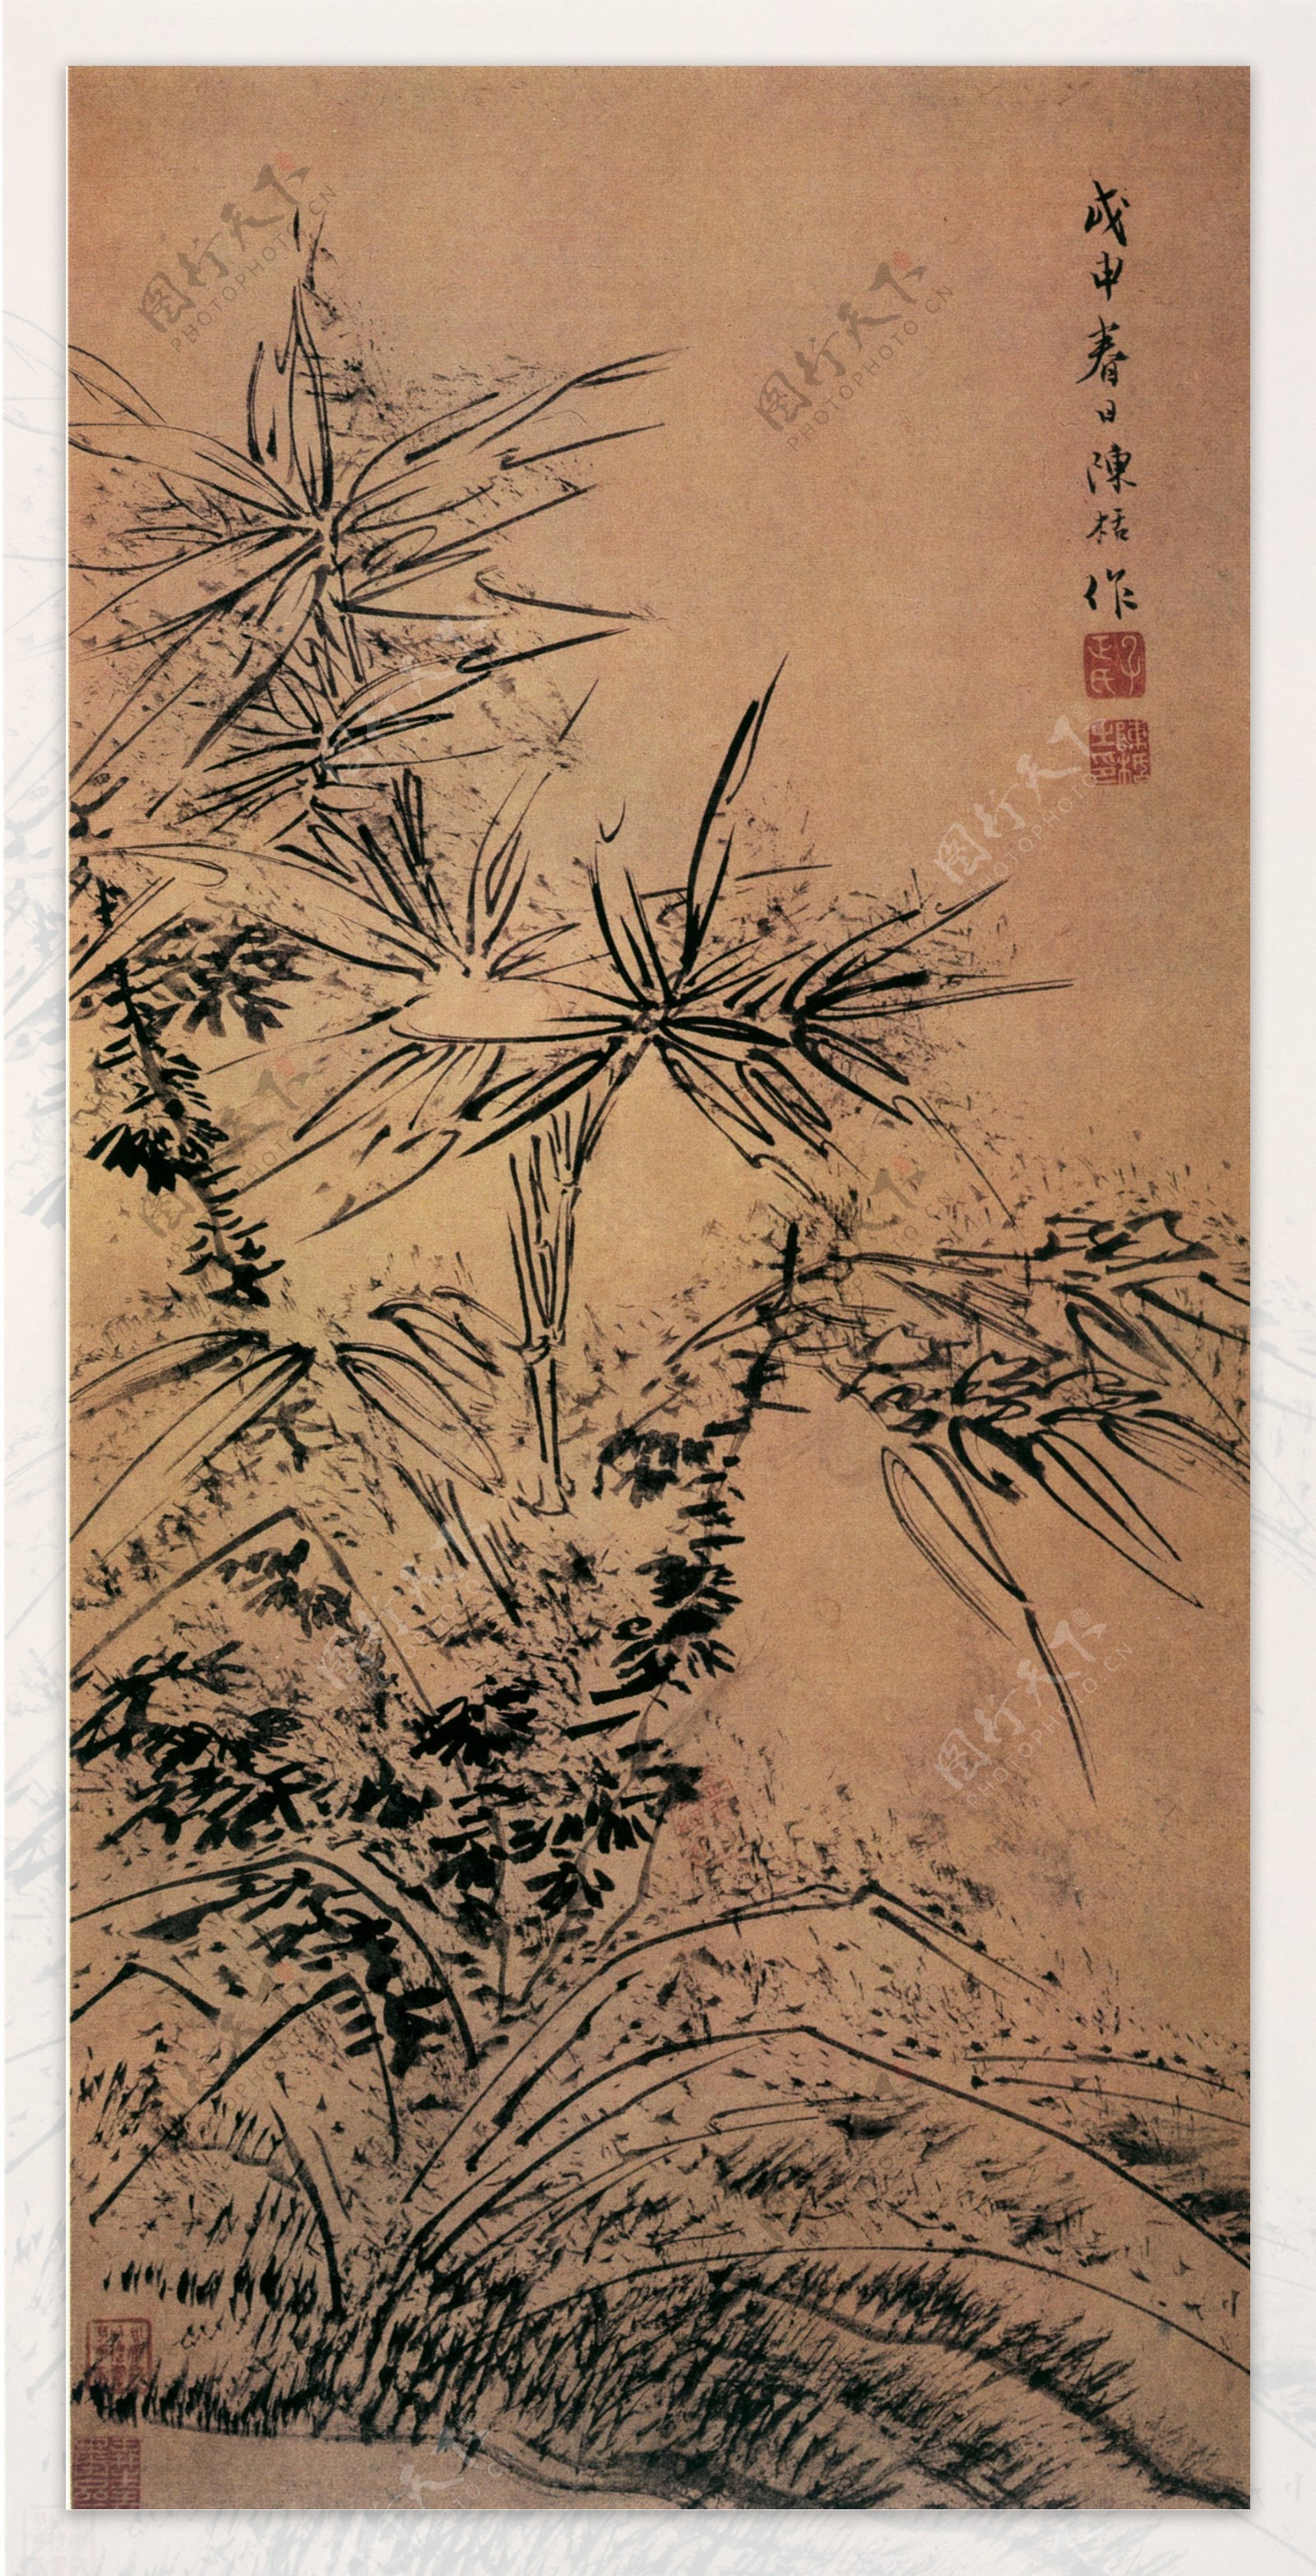 中国传世名画花鸟画竹子石头